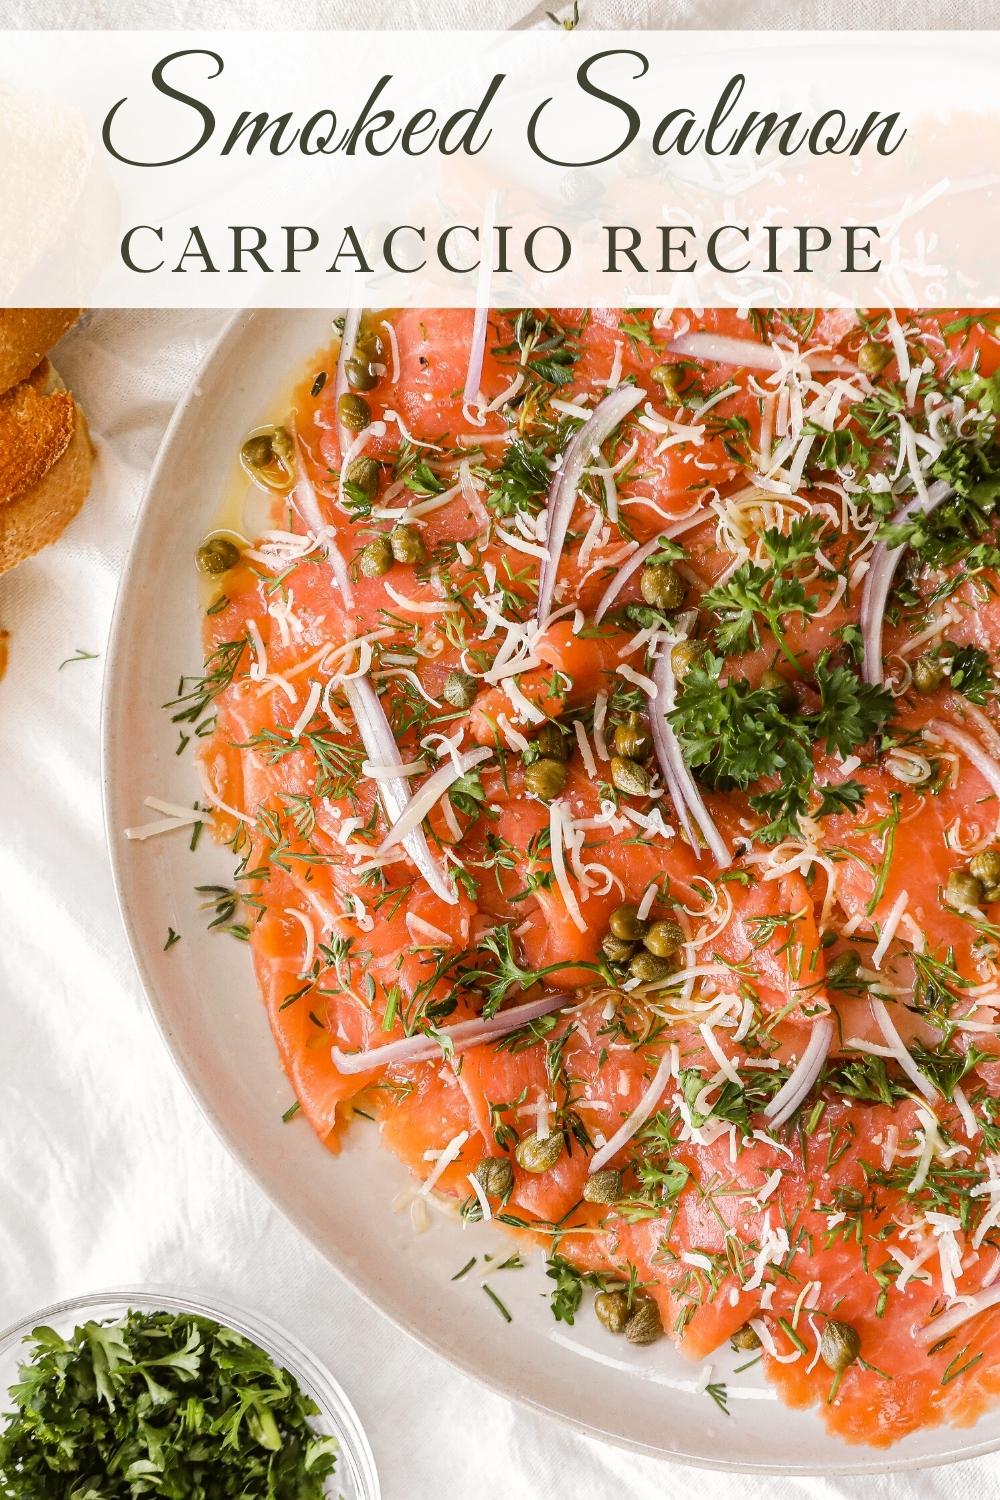 Smoked Salmon Carpaccio recipe